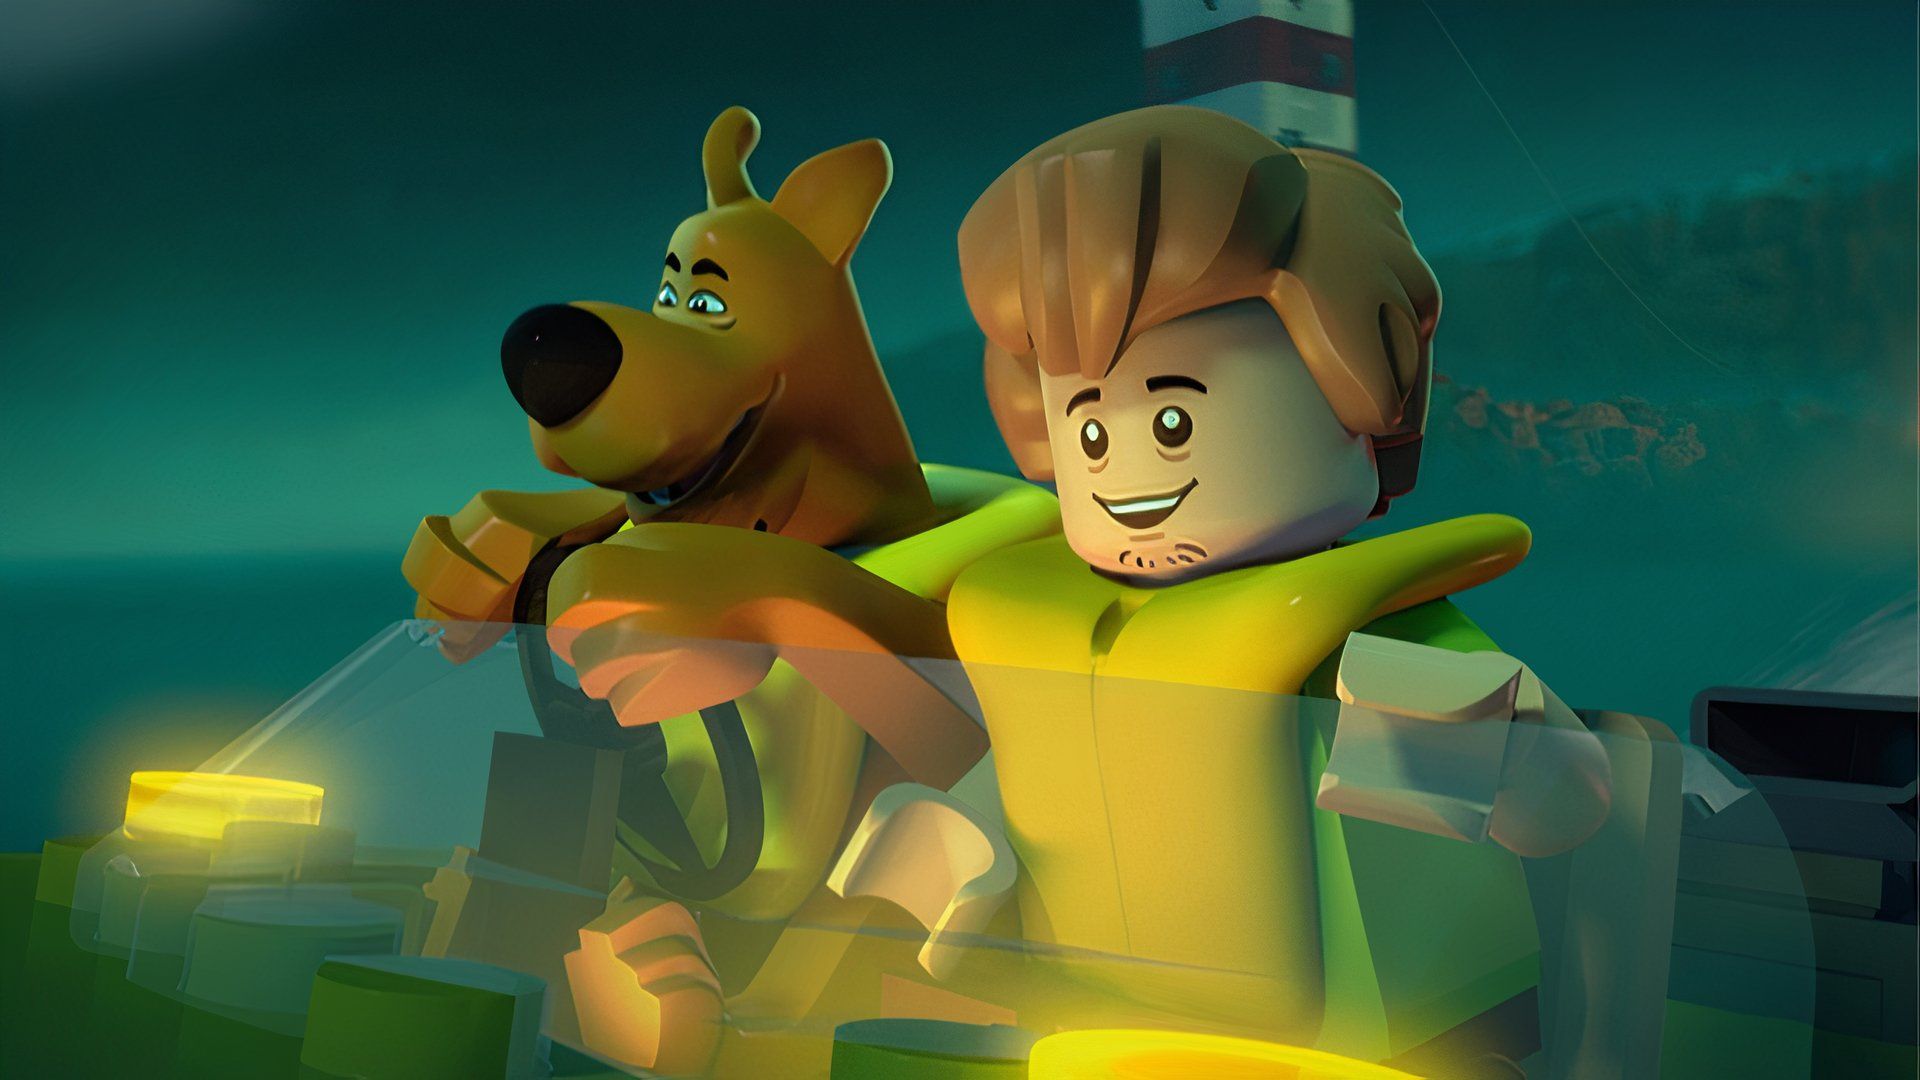 Все фильмы Lego с прямой трансляцией на видео в рейтинге